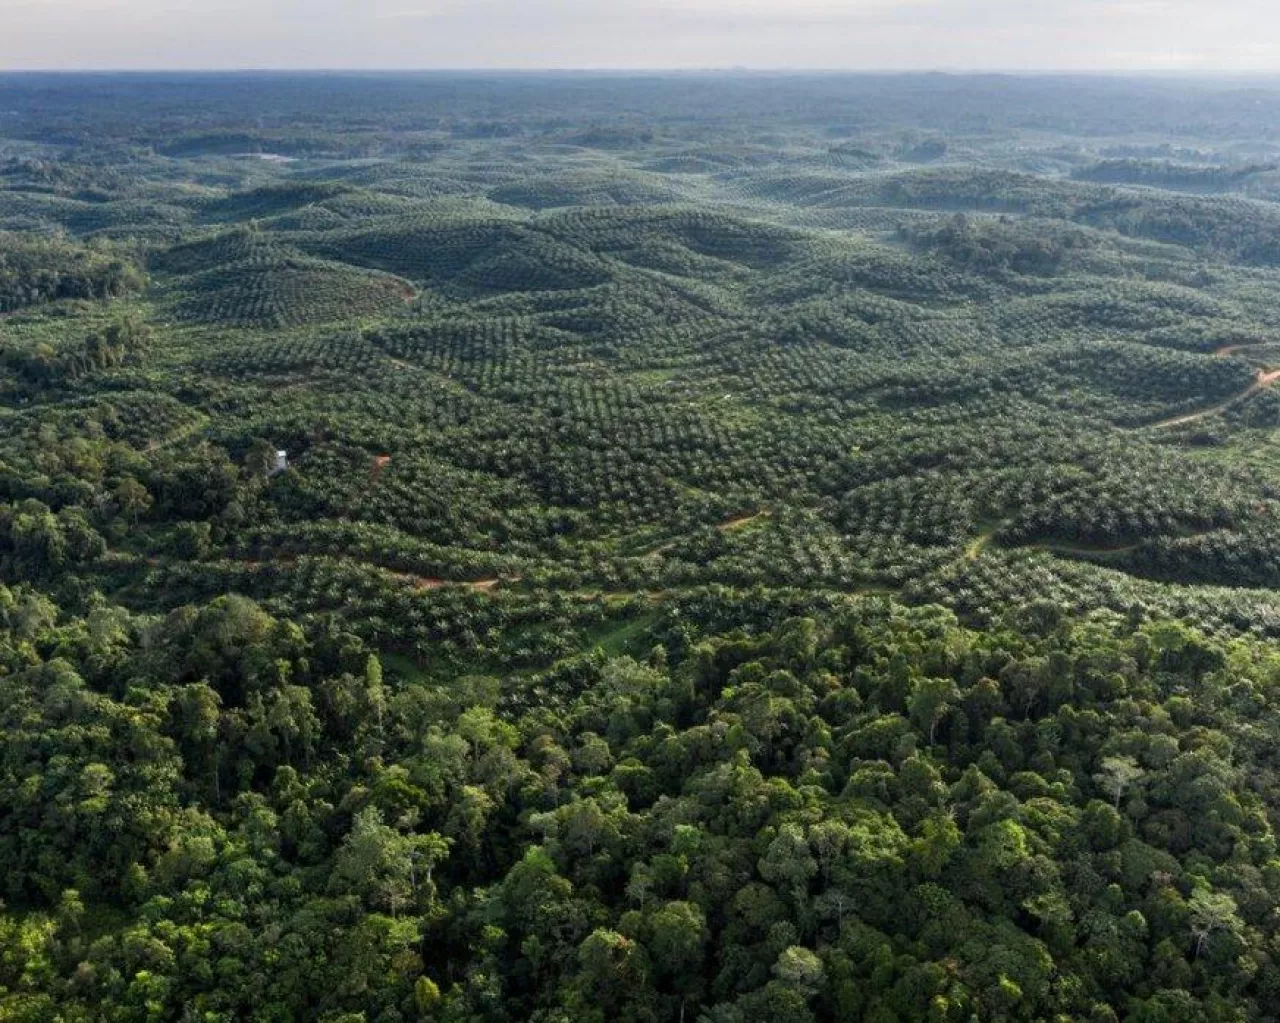 Borneo to trzecia co do wielkości wyspa na świecie, na której znajduje się jeden z najważniejszych obszarów lasów deszczowych. Szczyci się ogromną różnorodnością biologiczną. Niestety, w ostatnich dziesięcioleciach duże obszary tego ważnego ekosystemu zostały przekształcone w plantacje palm olejowych